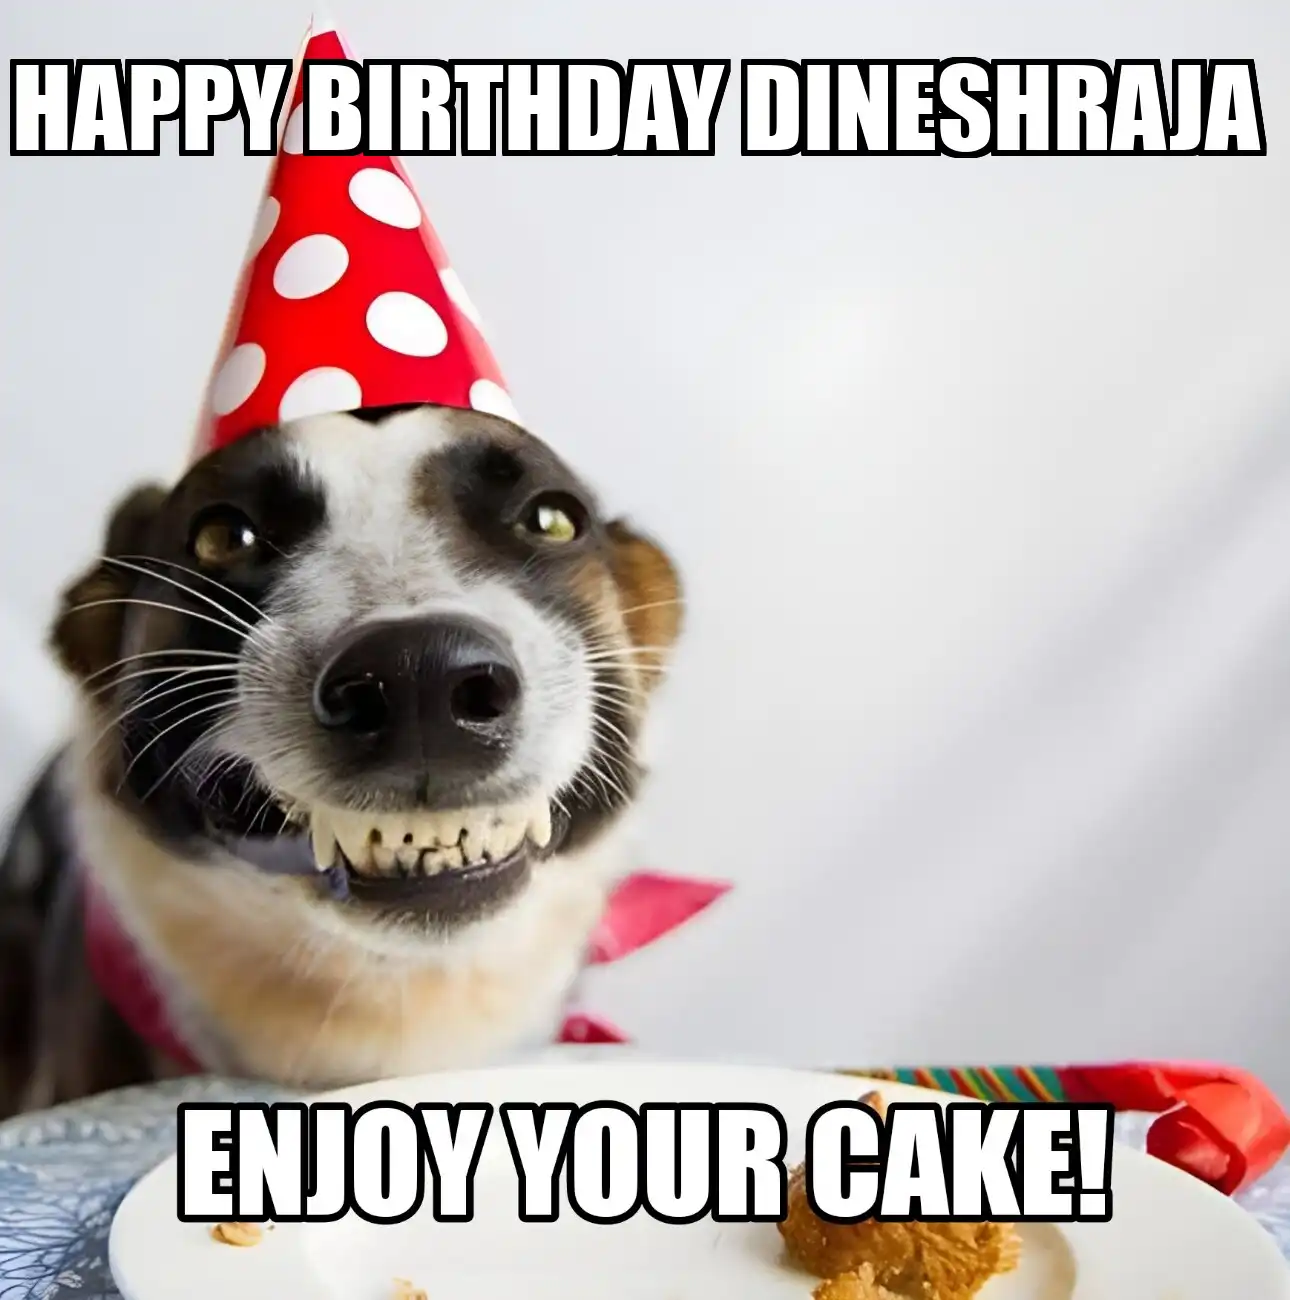 Happy Birthday Dineshraja Enjoy Your Cake Dog Meme